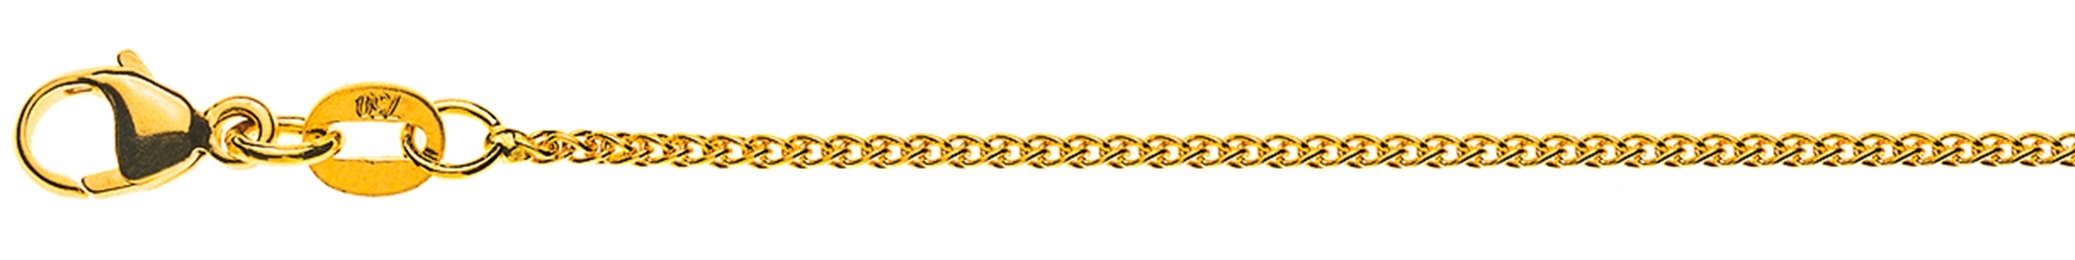 AURONOS Élégance Halskette Gelbgold 14K Zopfkette 60cm 1.2mm